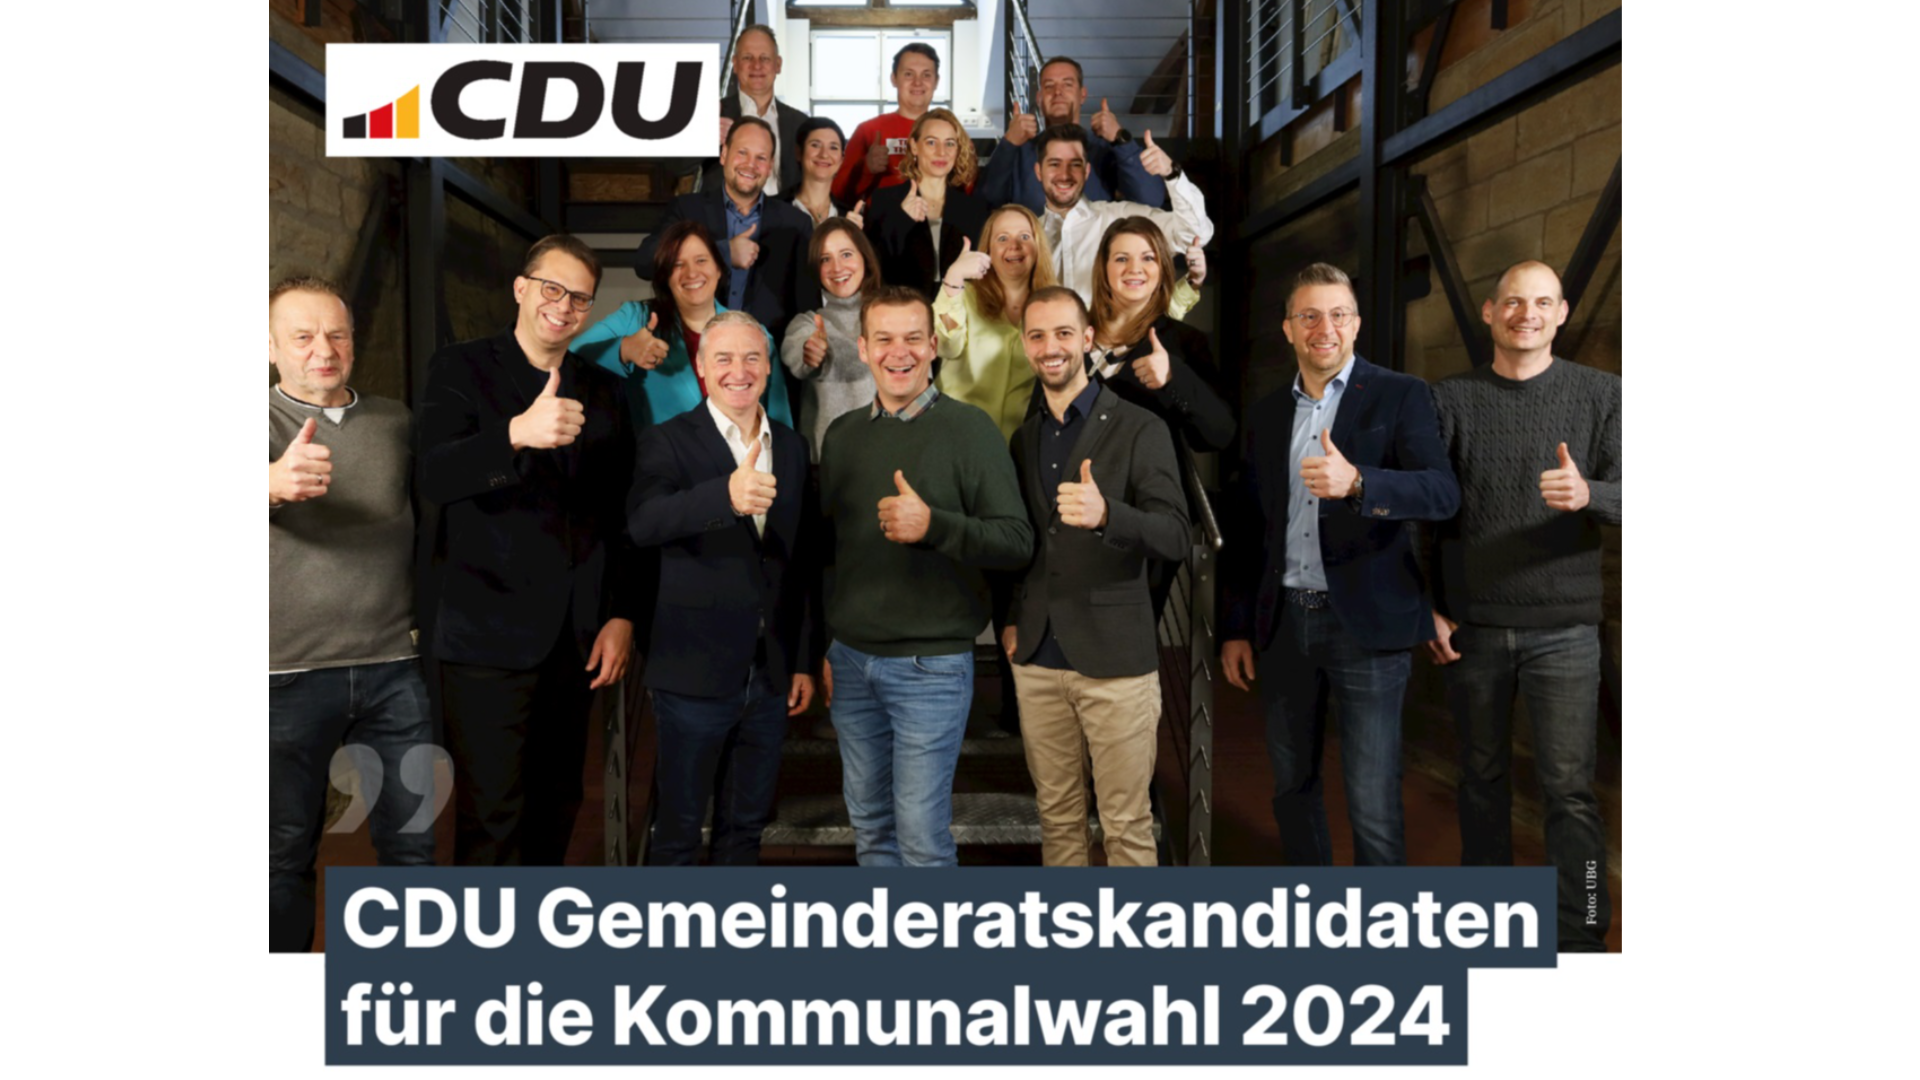 Unsere CDU Gemeinderatskandidaten! Ein starkes Team fr ein starkes Nordheim! 